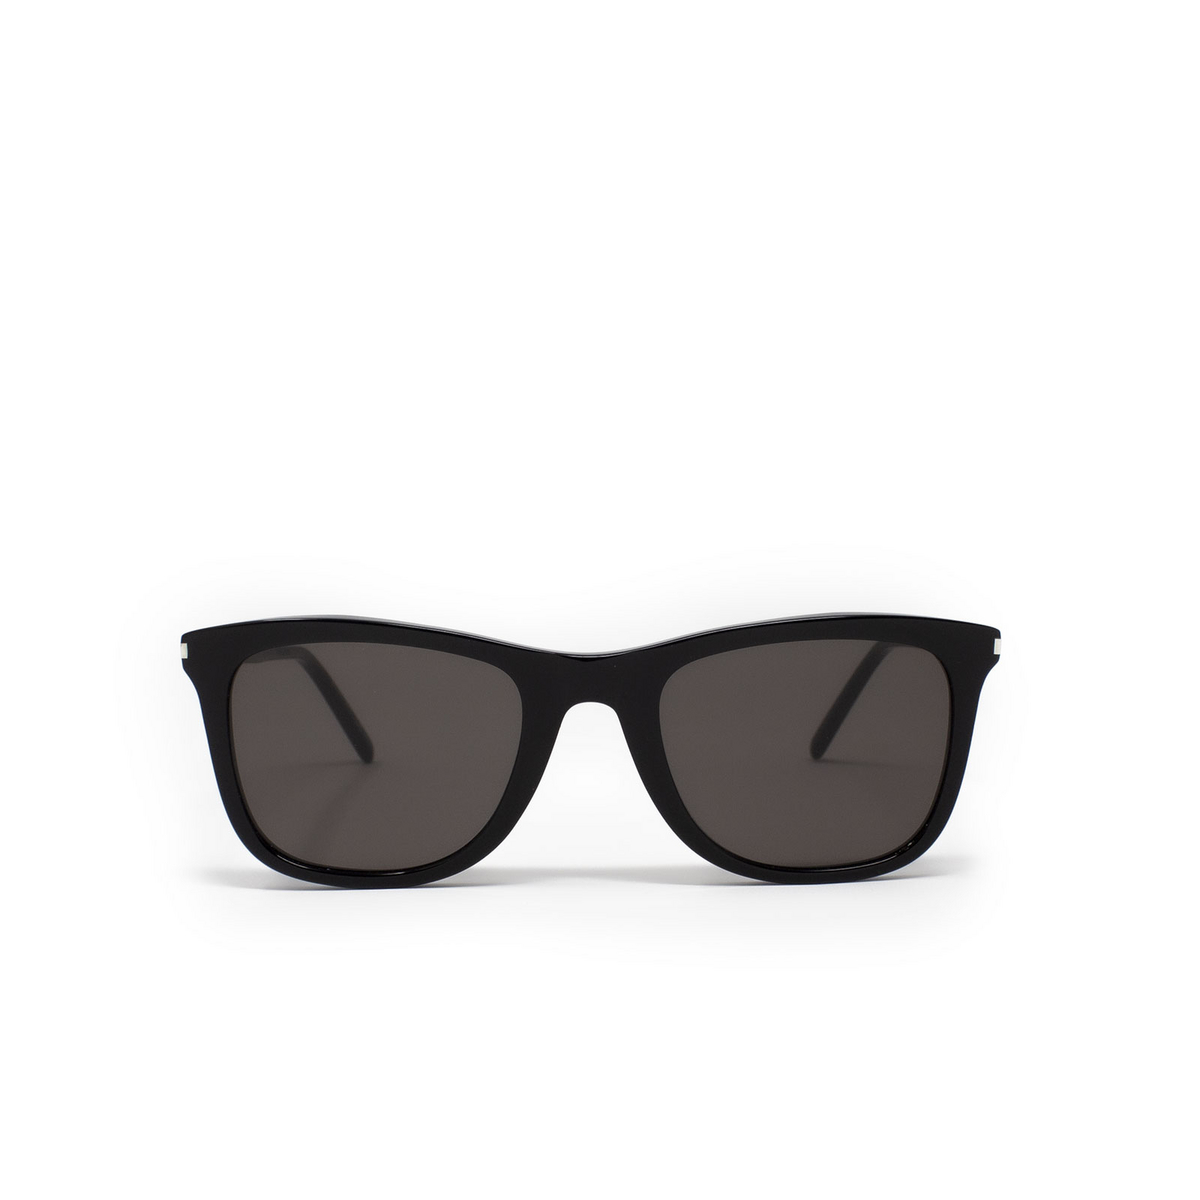 Saint Laurent® Square Sunglasses: SL 304 color Black 001 - 1/3.